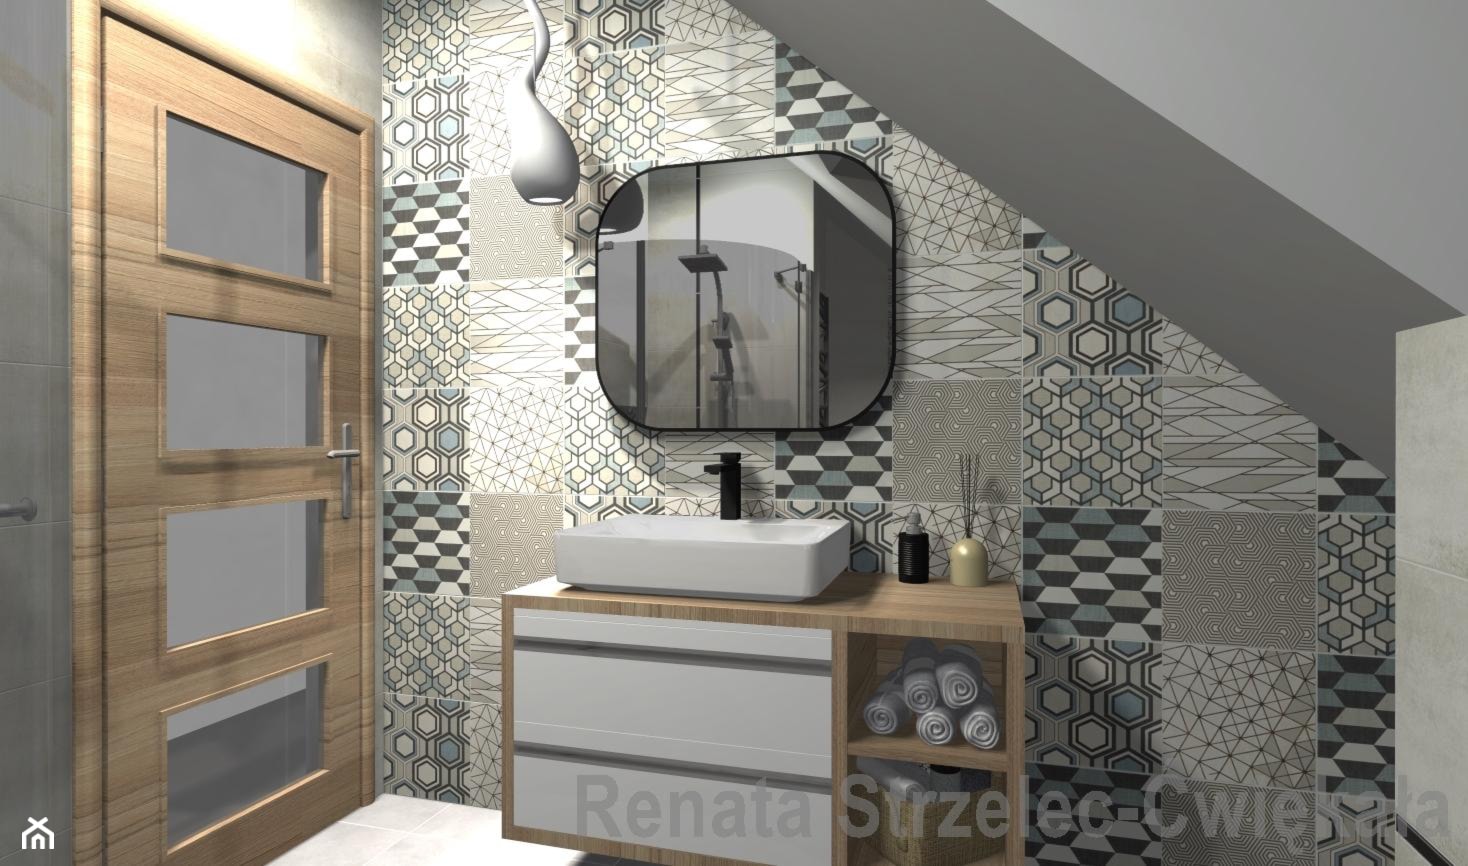 Łazienka na poddaszu z mozaiką - zdjęcie od Renata Strzelec - Ćwiękała - Homebook